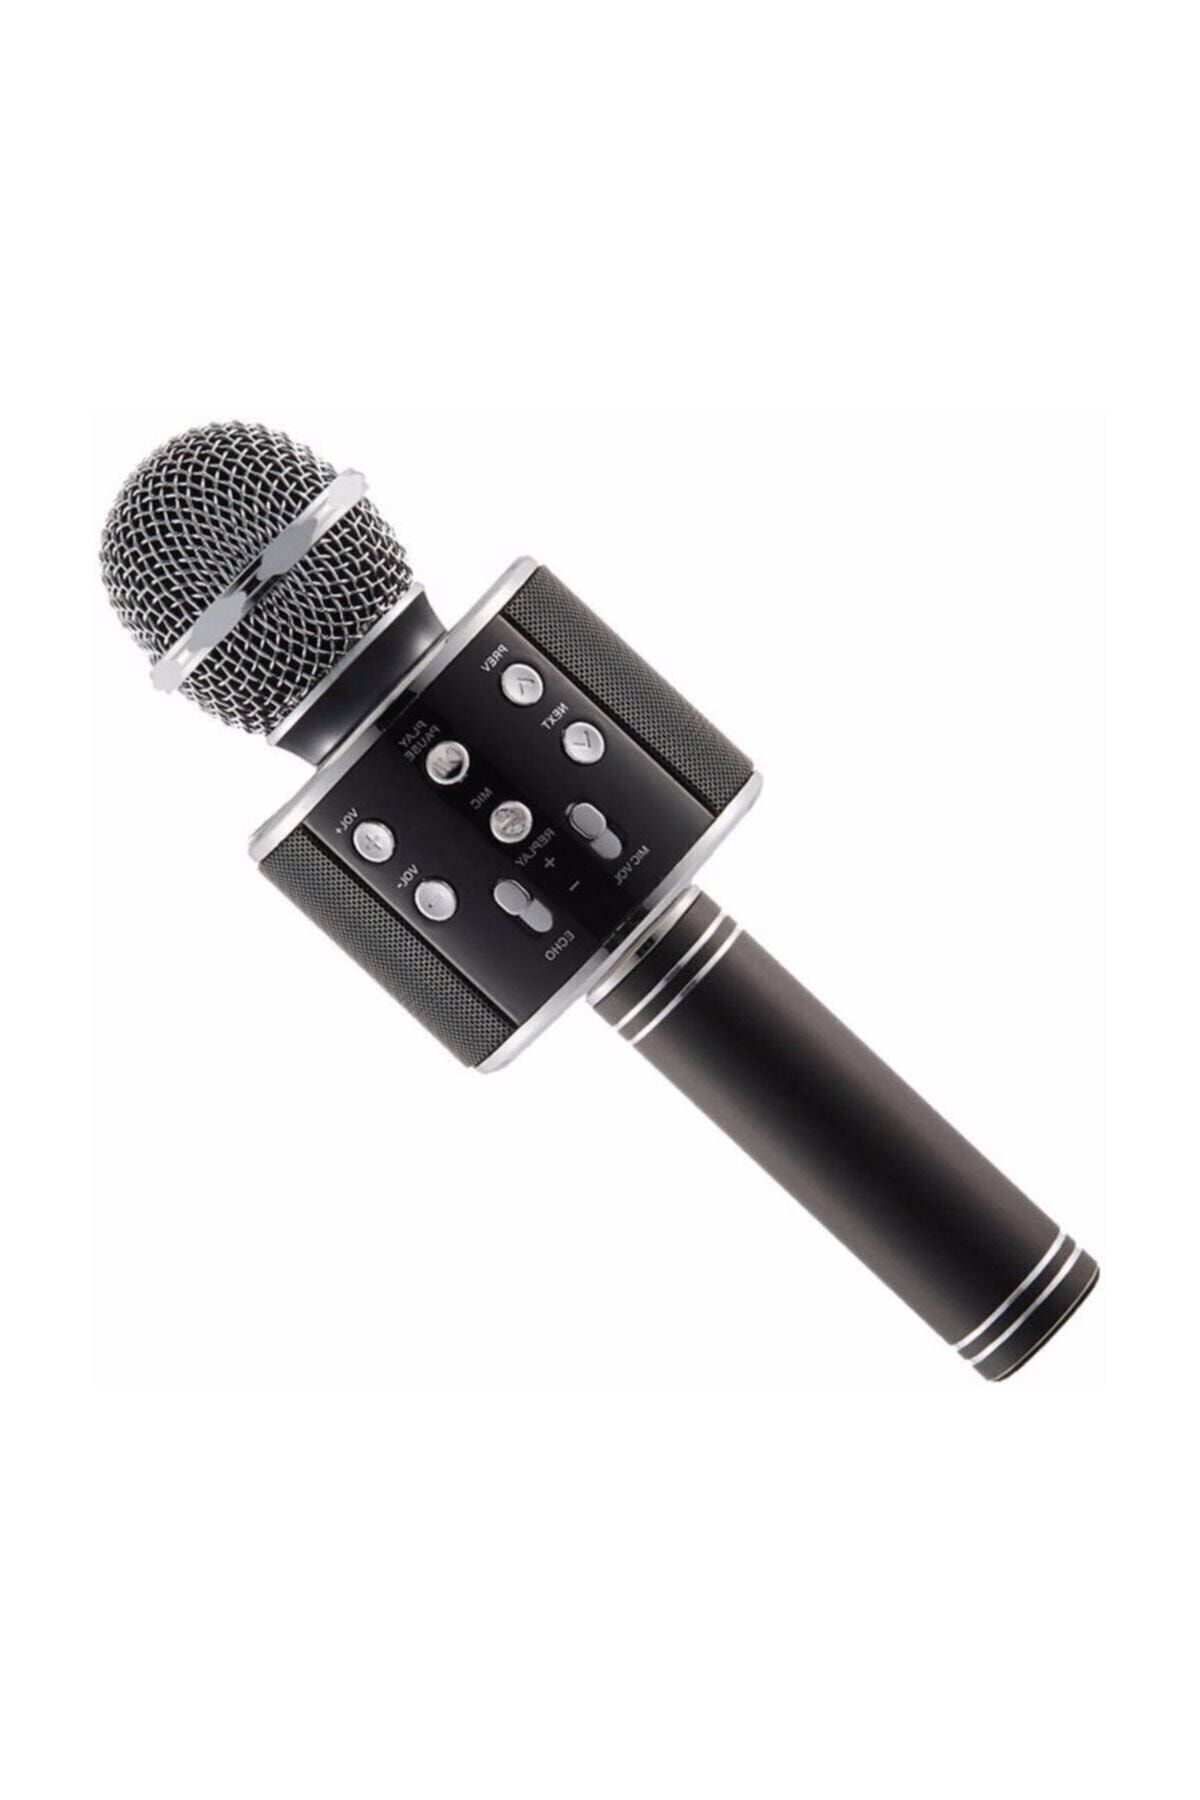 Polygold Ws-858 Karaoke Bluetooth Kablosuz Mikrofon Hoparlör Ses Kayıt